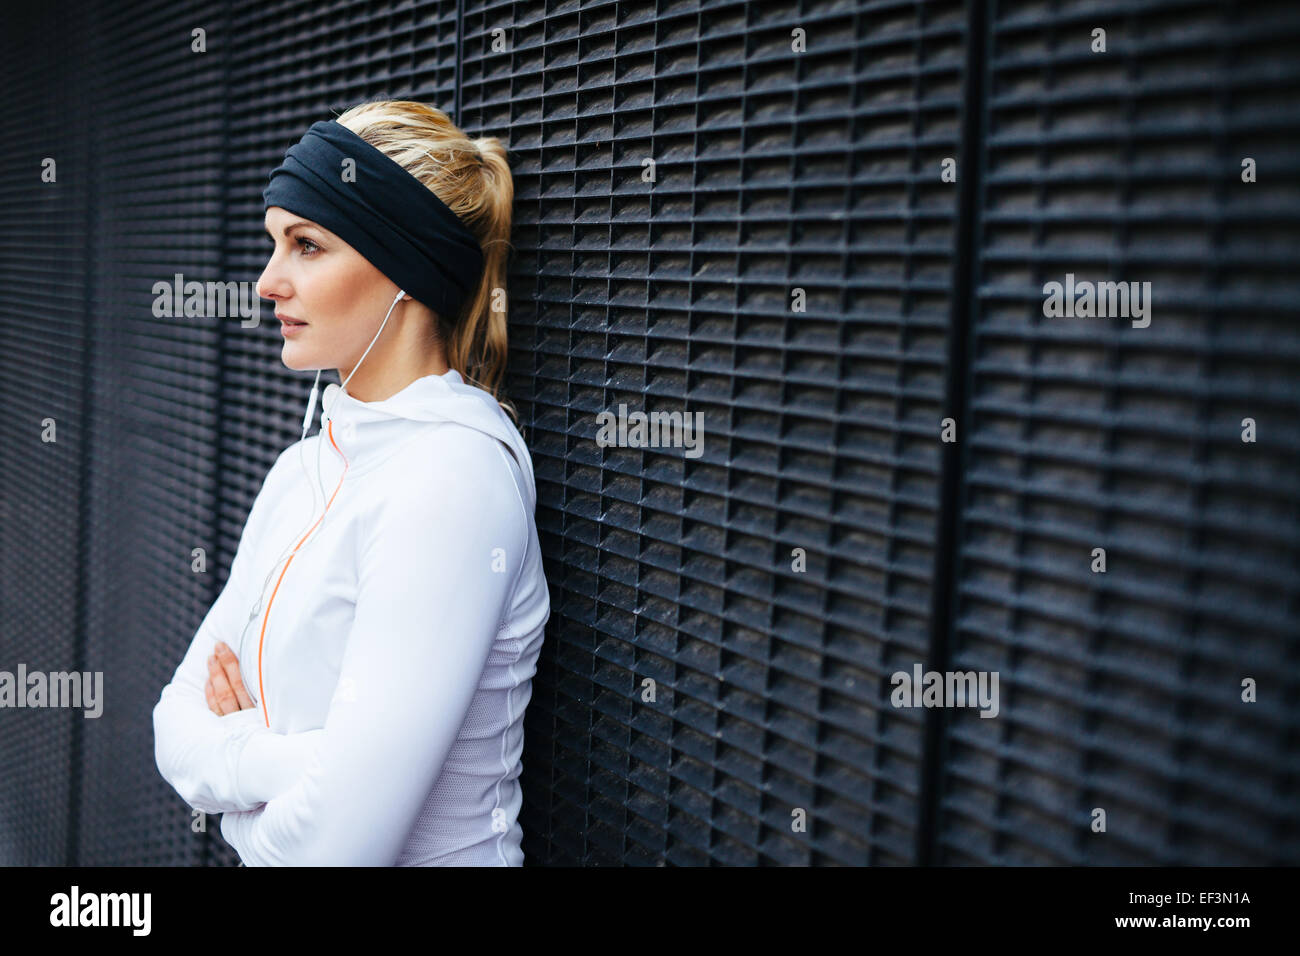 Immagine di attraente e sportivo giovane donna in piedi contro un muro che guarda lontano. Prendendo una pausa da outdoor training session. Foto Stock